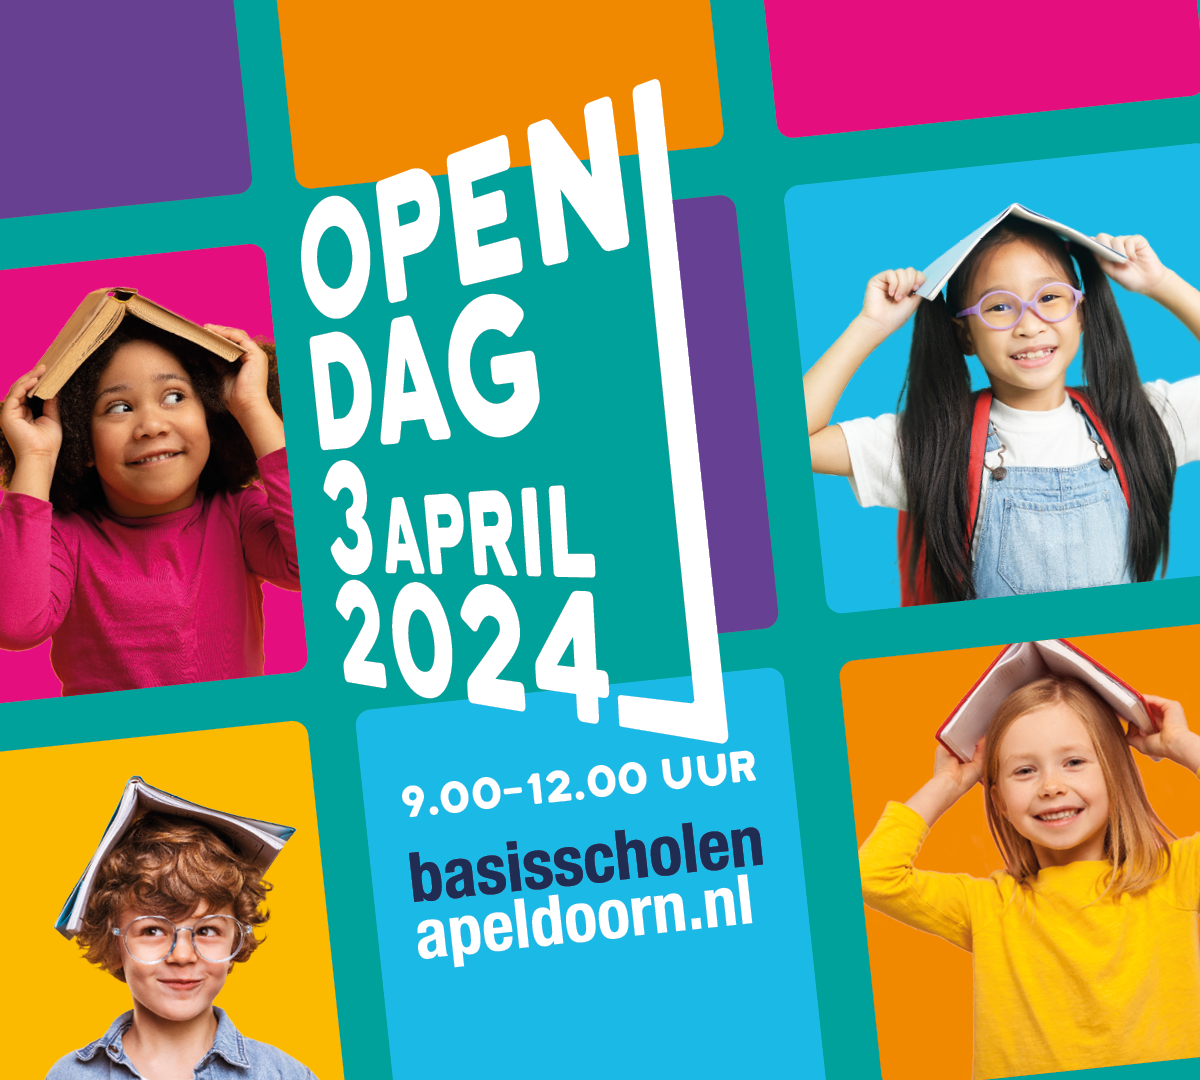 Open dag basisscholen Apeldoorn op woensdag 3 april